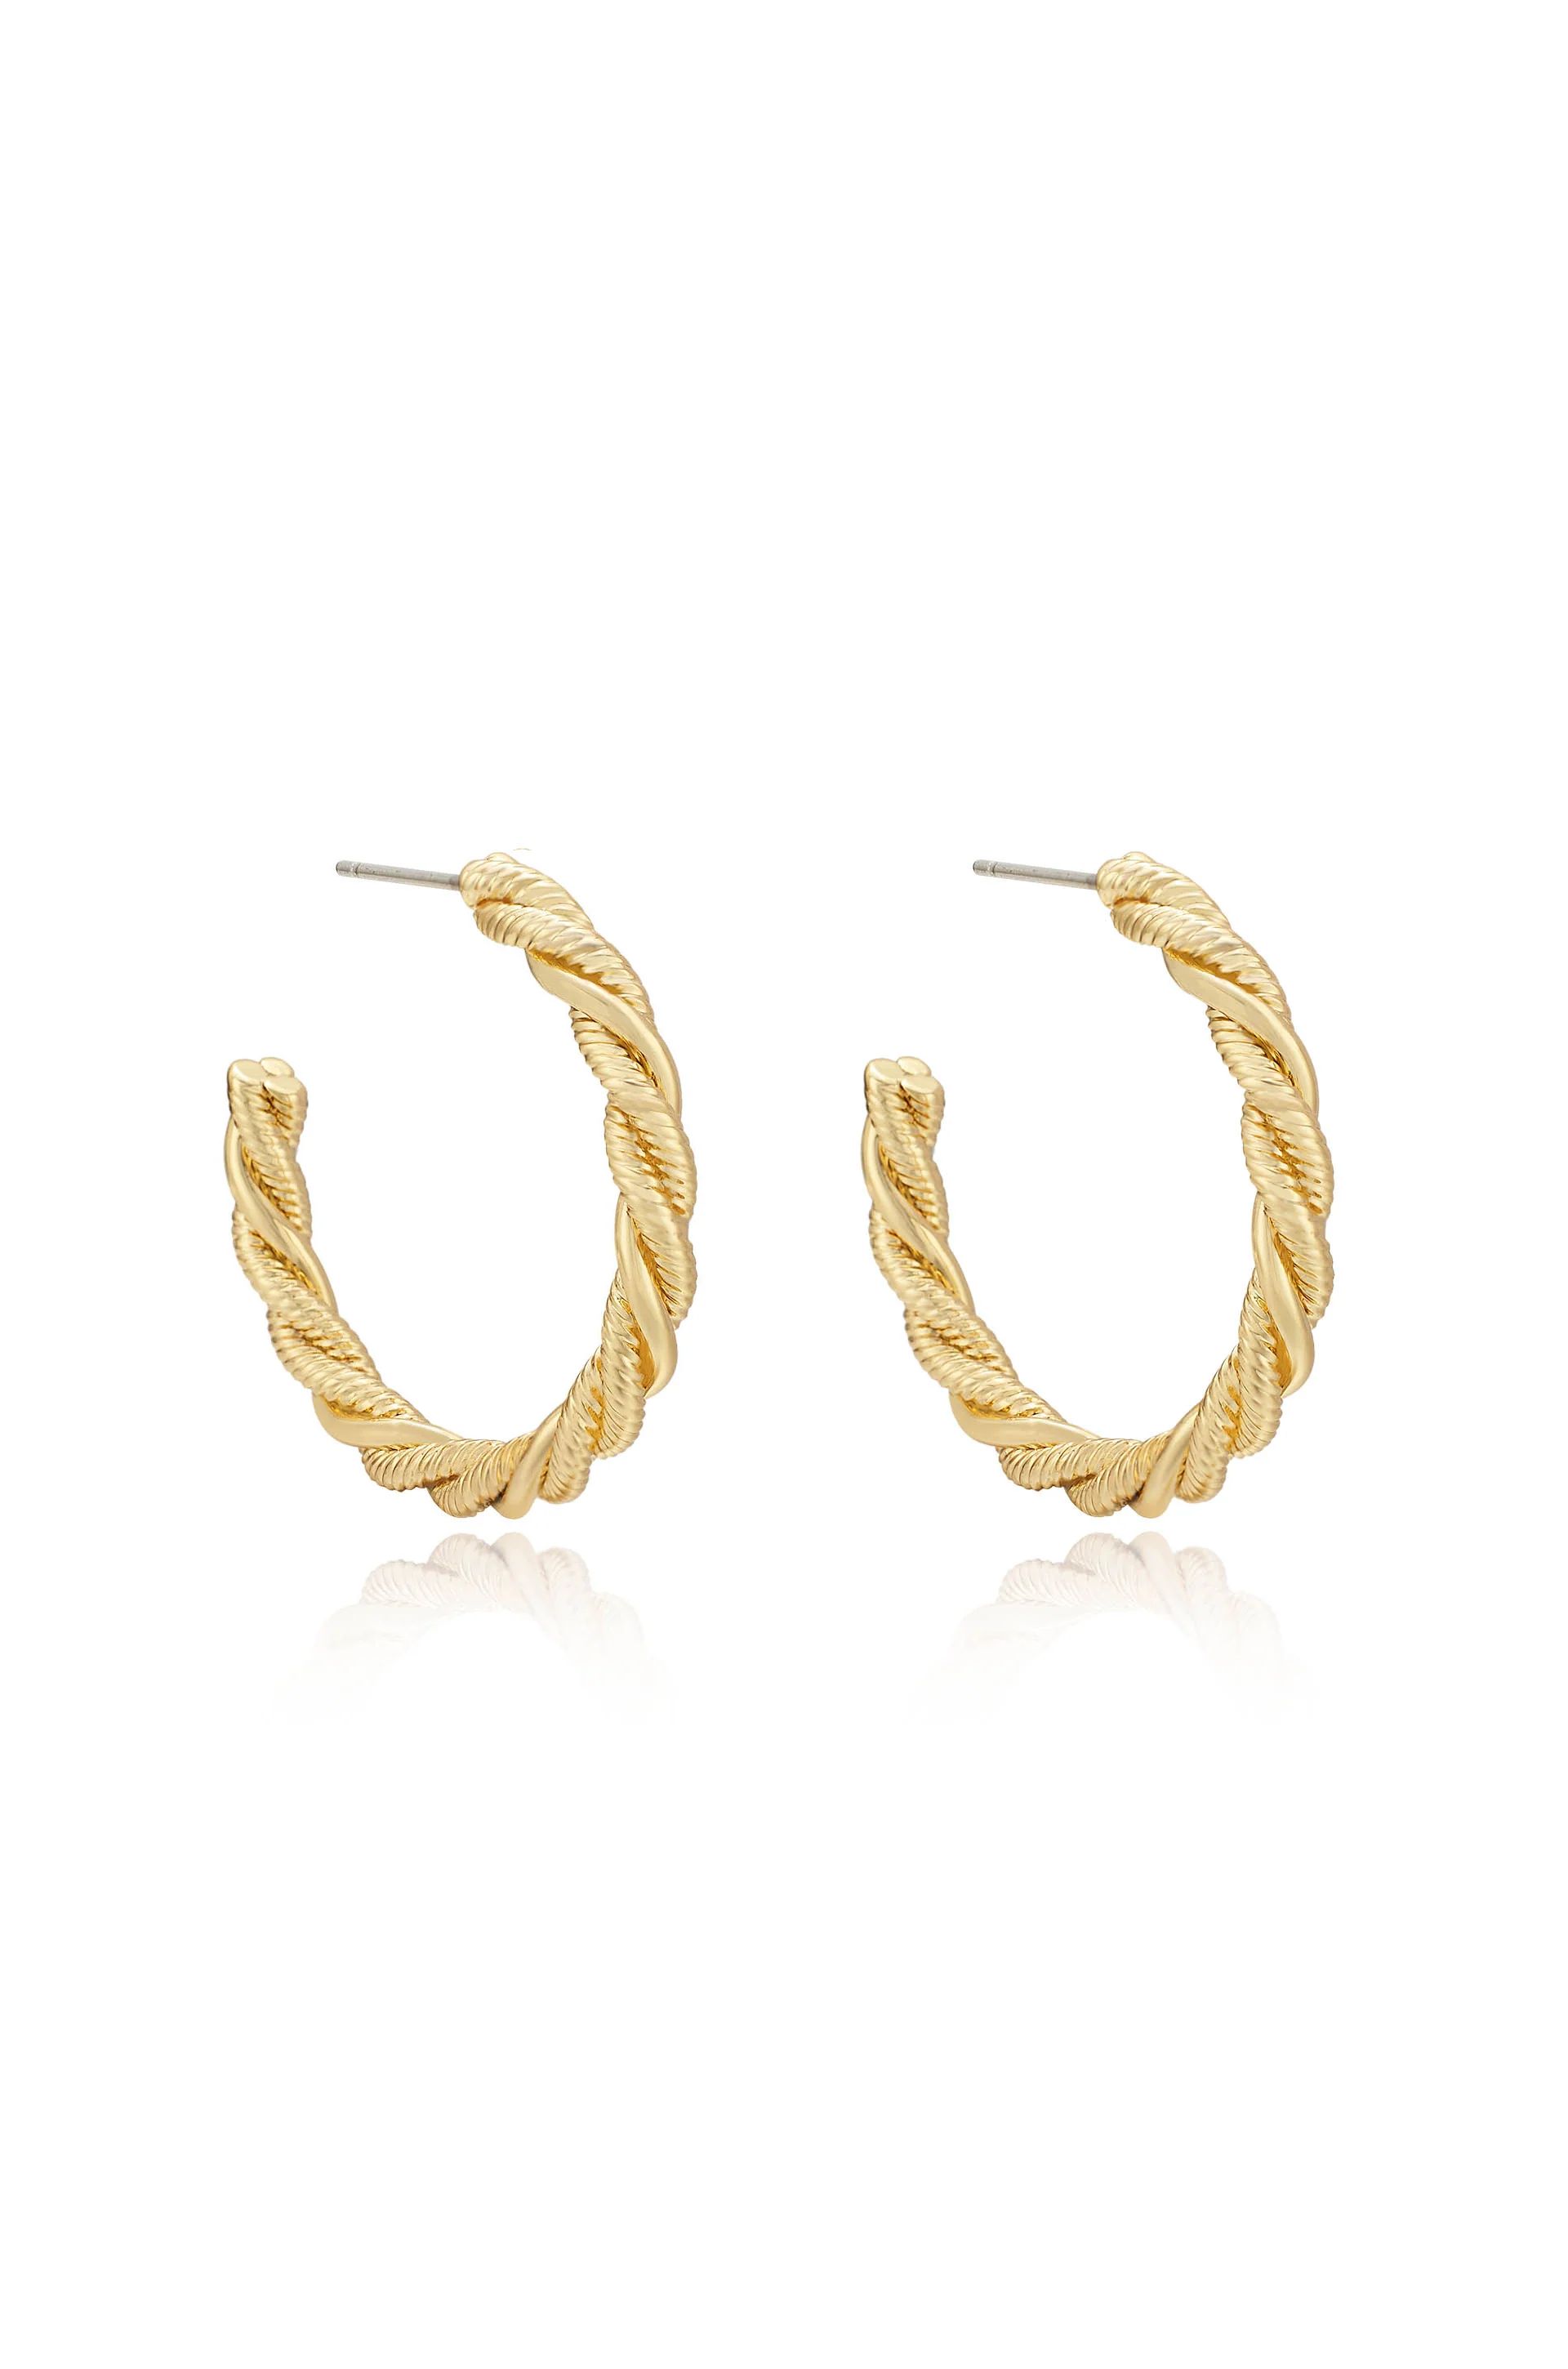 Spun Strands 18k Gold Plated Hoop Earrings | Ettika